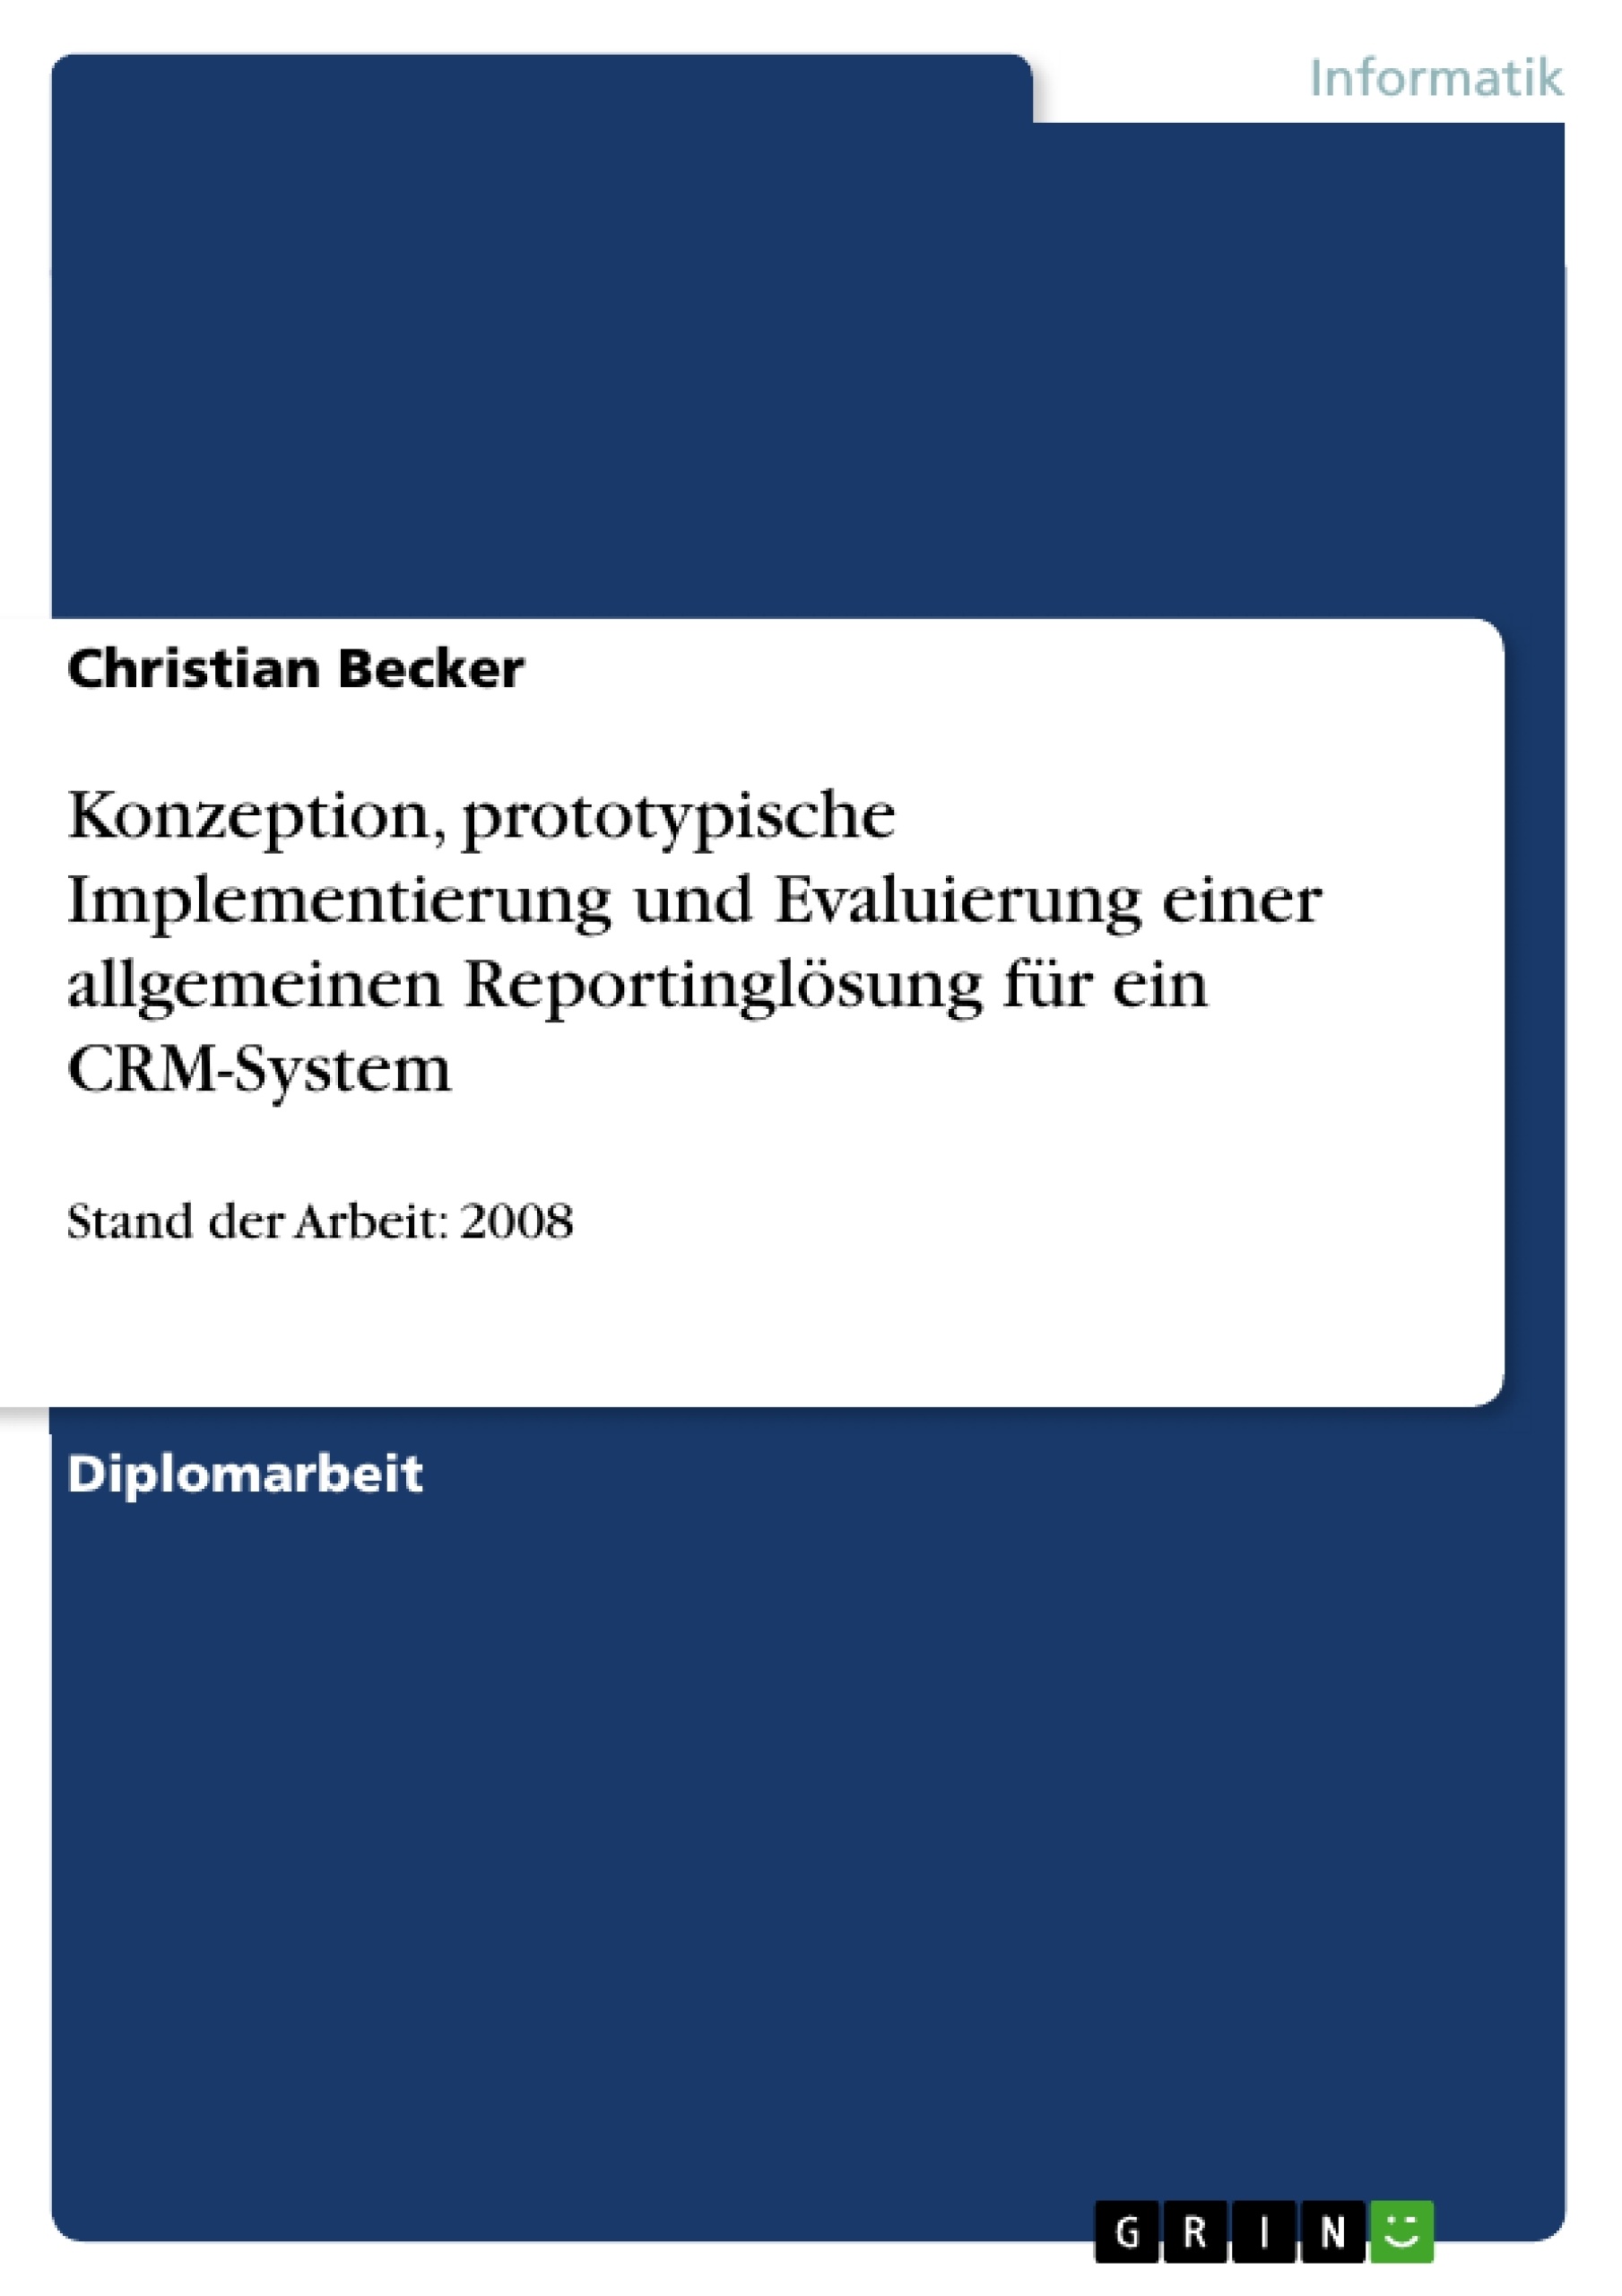 Titre: Konzeption, prototypische Implementierung und Evaluierung einer allgemeinen Reportinglösung für ein CRM-System